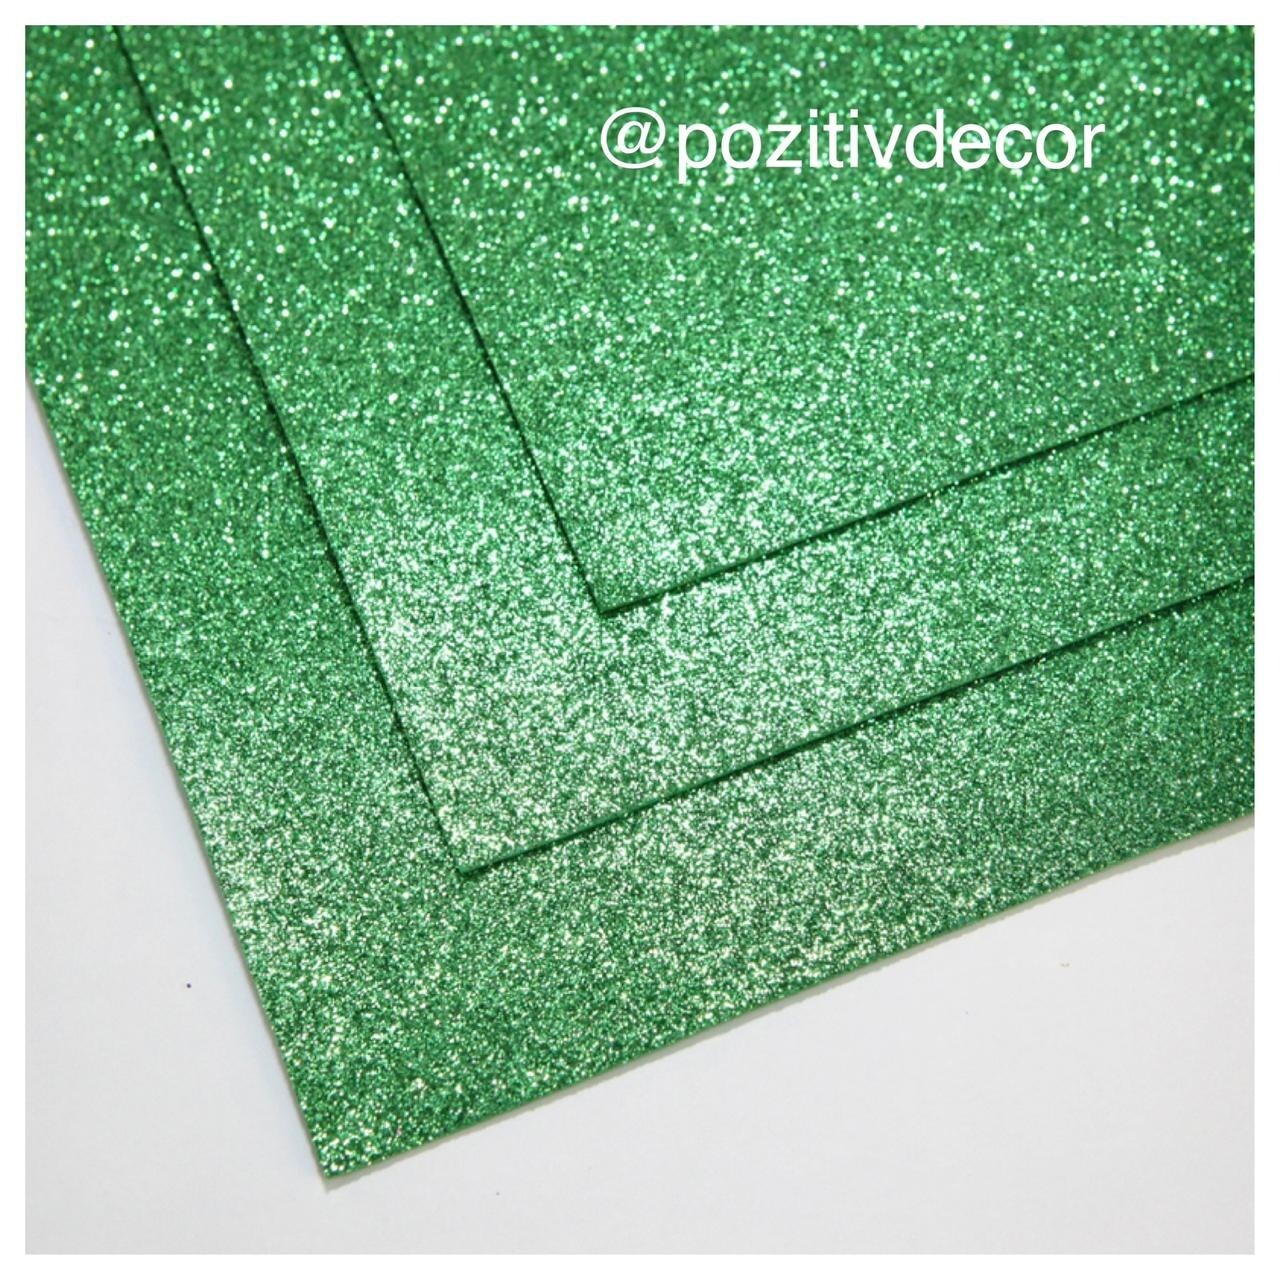 Фоамиран глиттерный - толщина 1,5 мм , размер листа 60/70 см.
Цвет - темно-зеленый